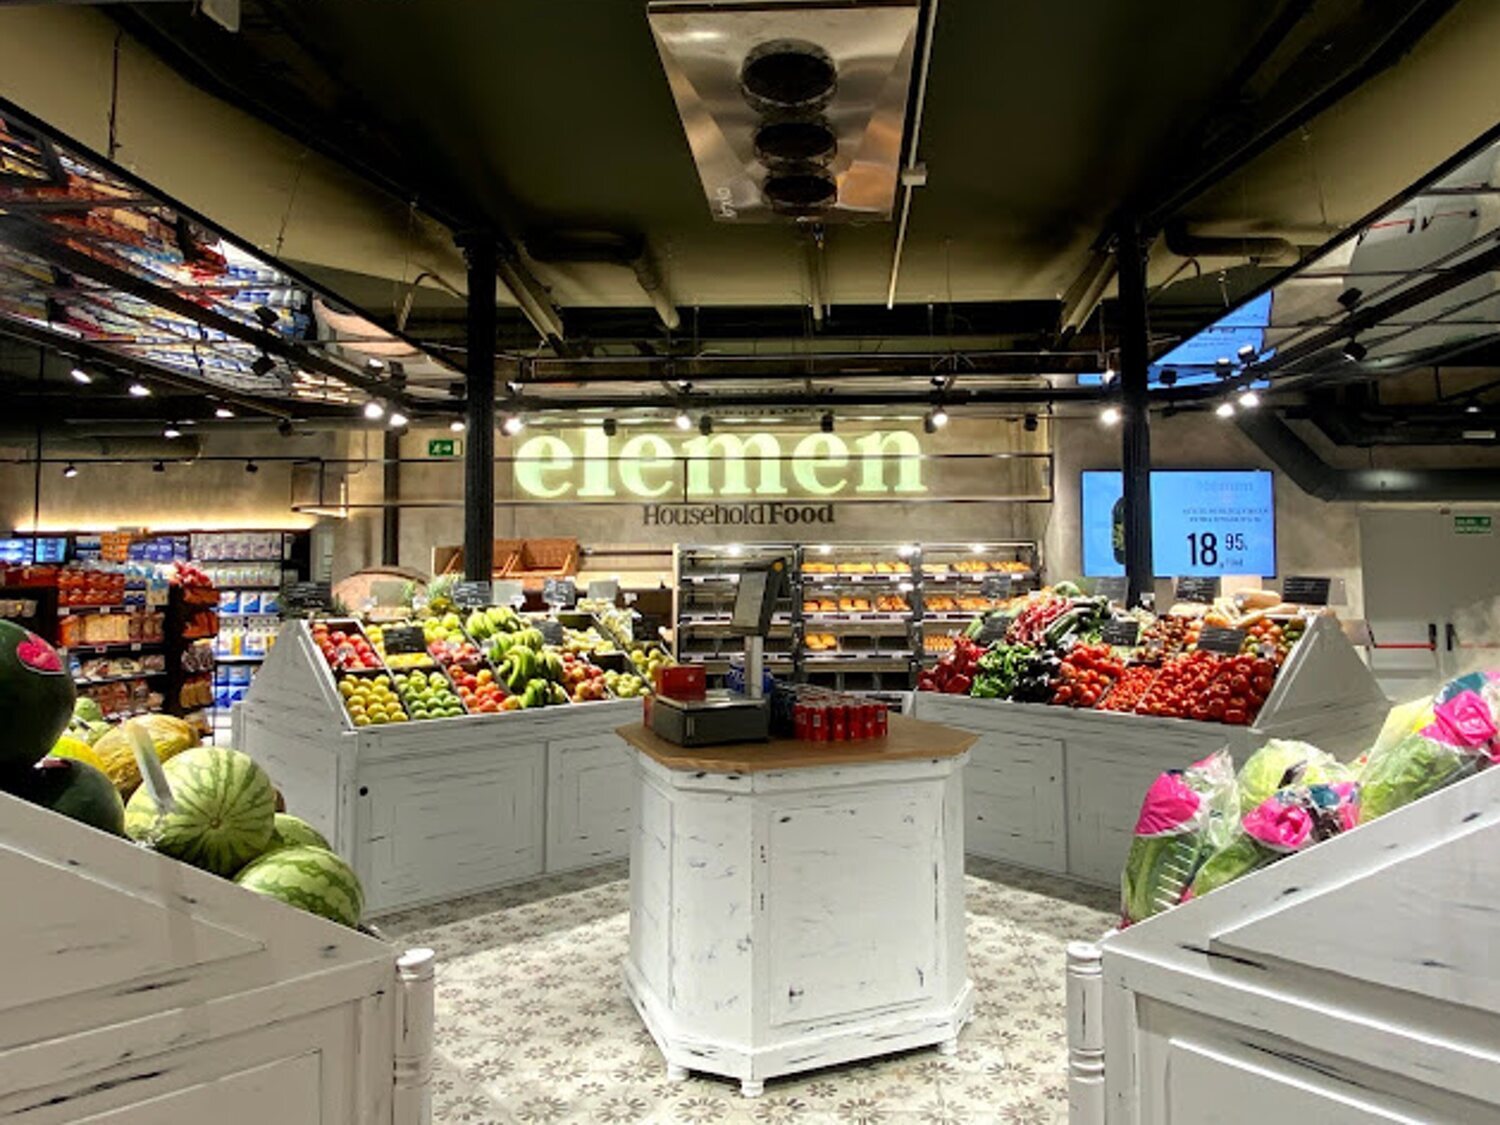 Un nuevo supermercado prepara su expansión por toda España con una marca: Elemen